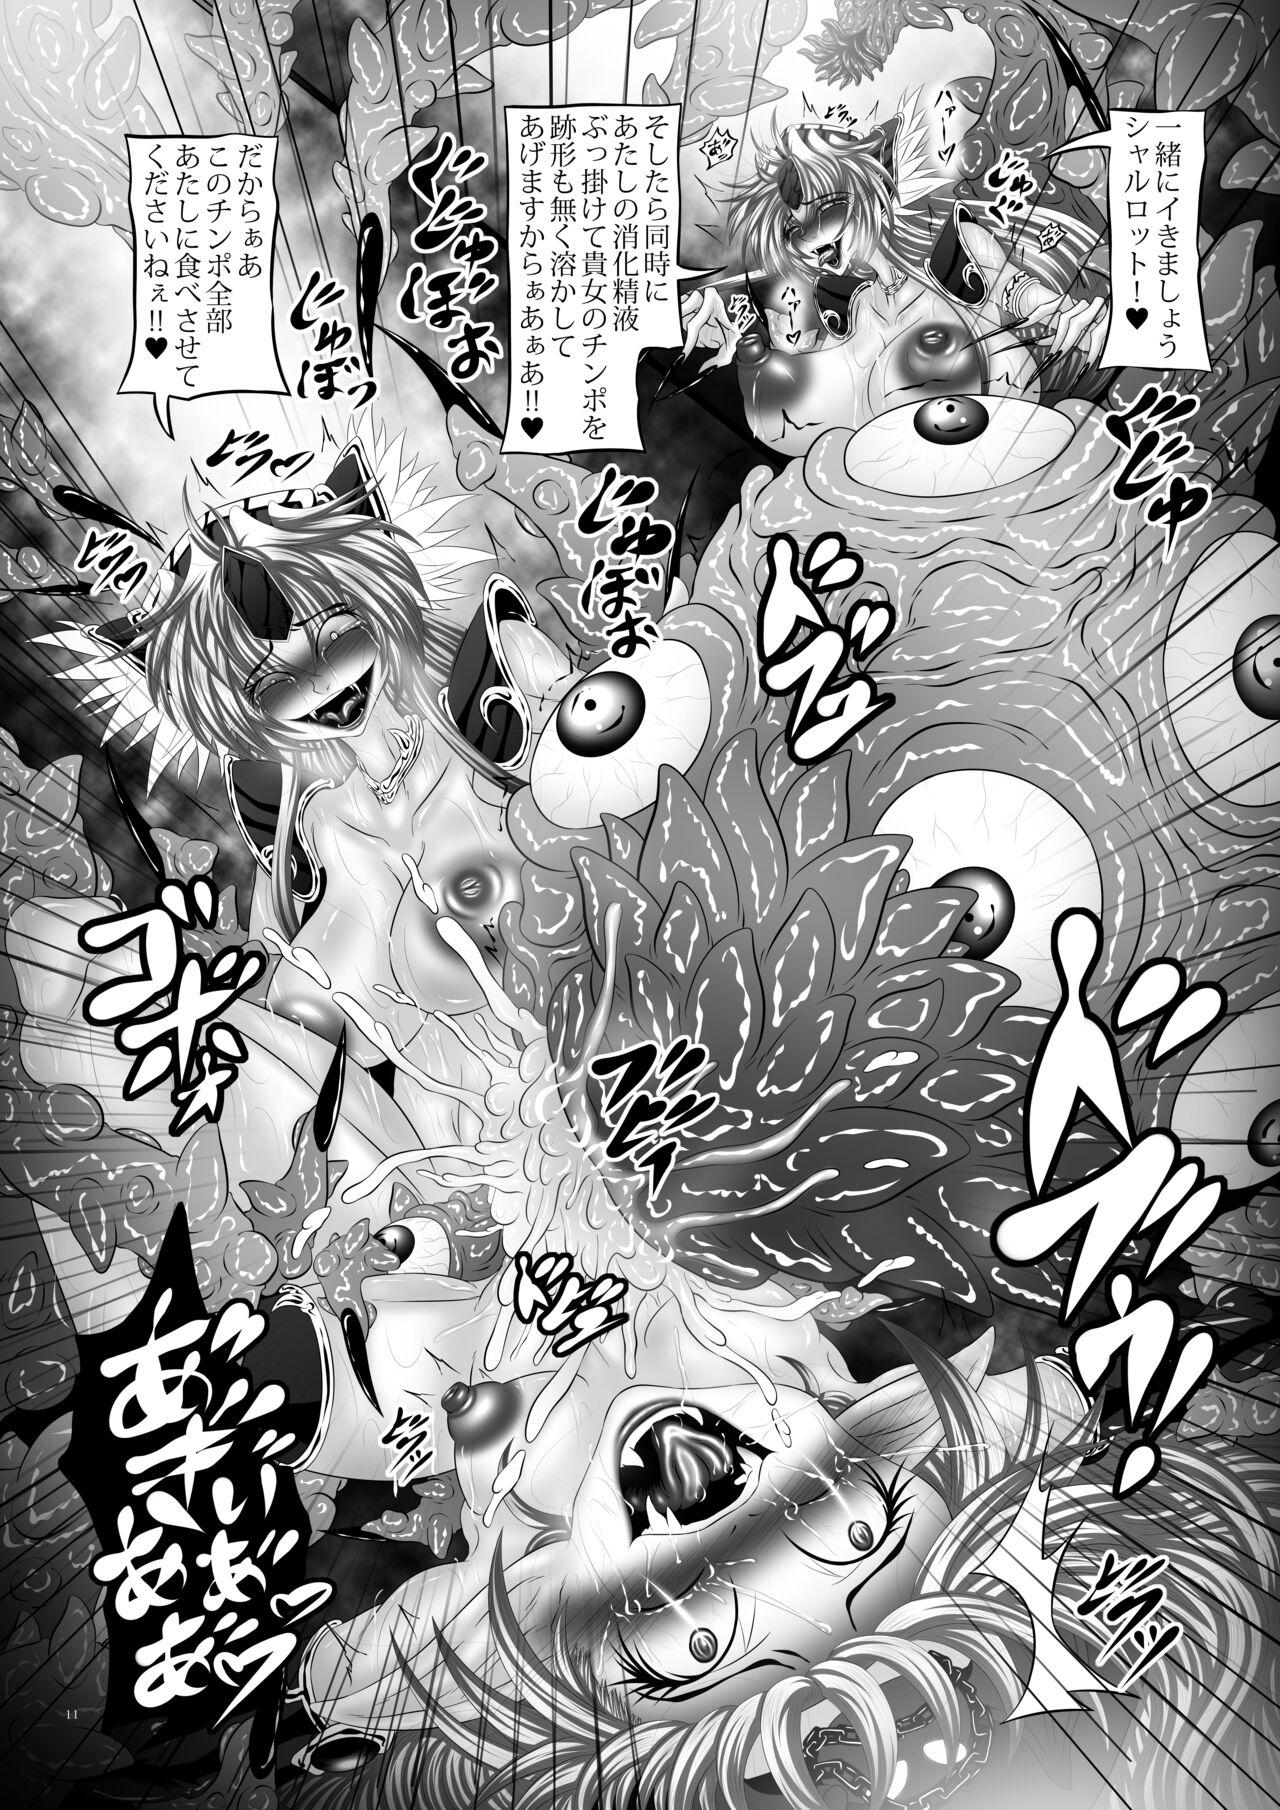 Bareback Dragon' s Fall V - Seiken densetsu 3 Maid - Page 10